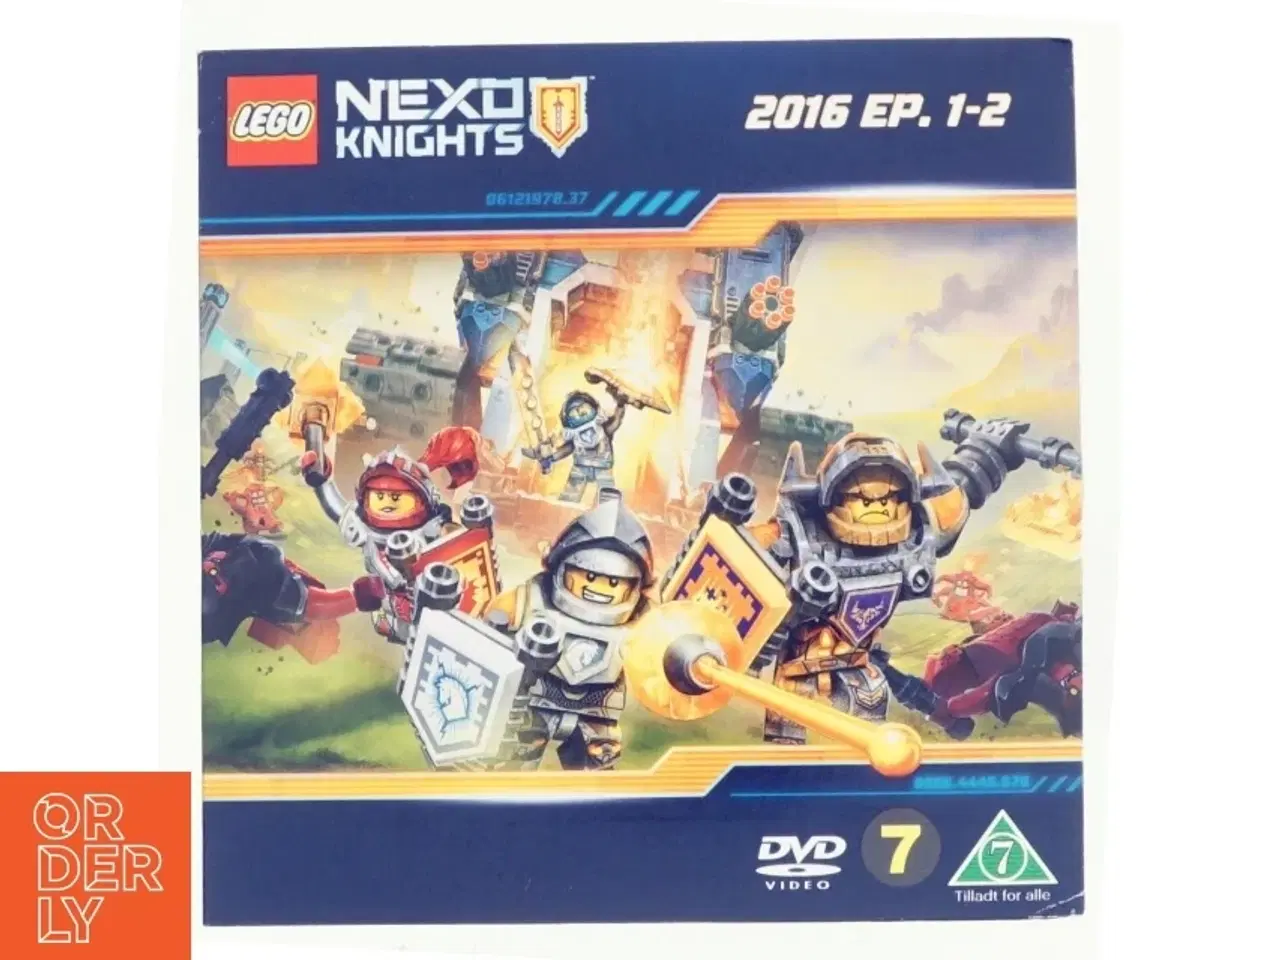 Billede 1 - Nexo Knights, 2016 ep.1-2 fra Lego